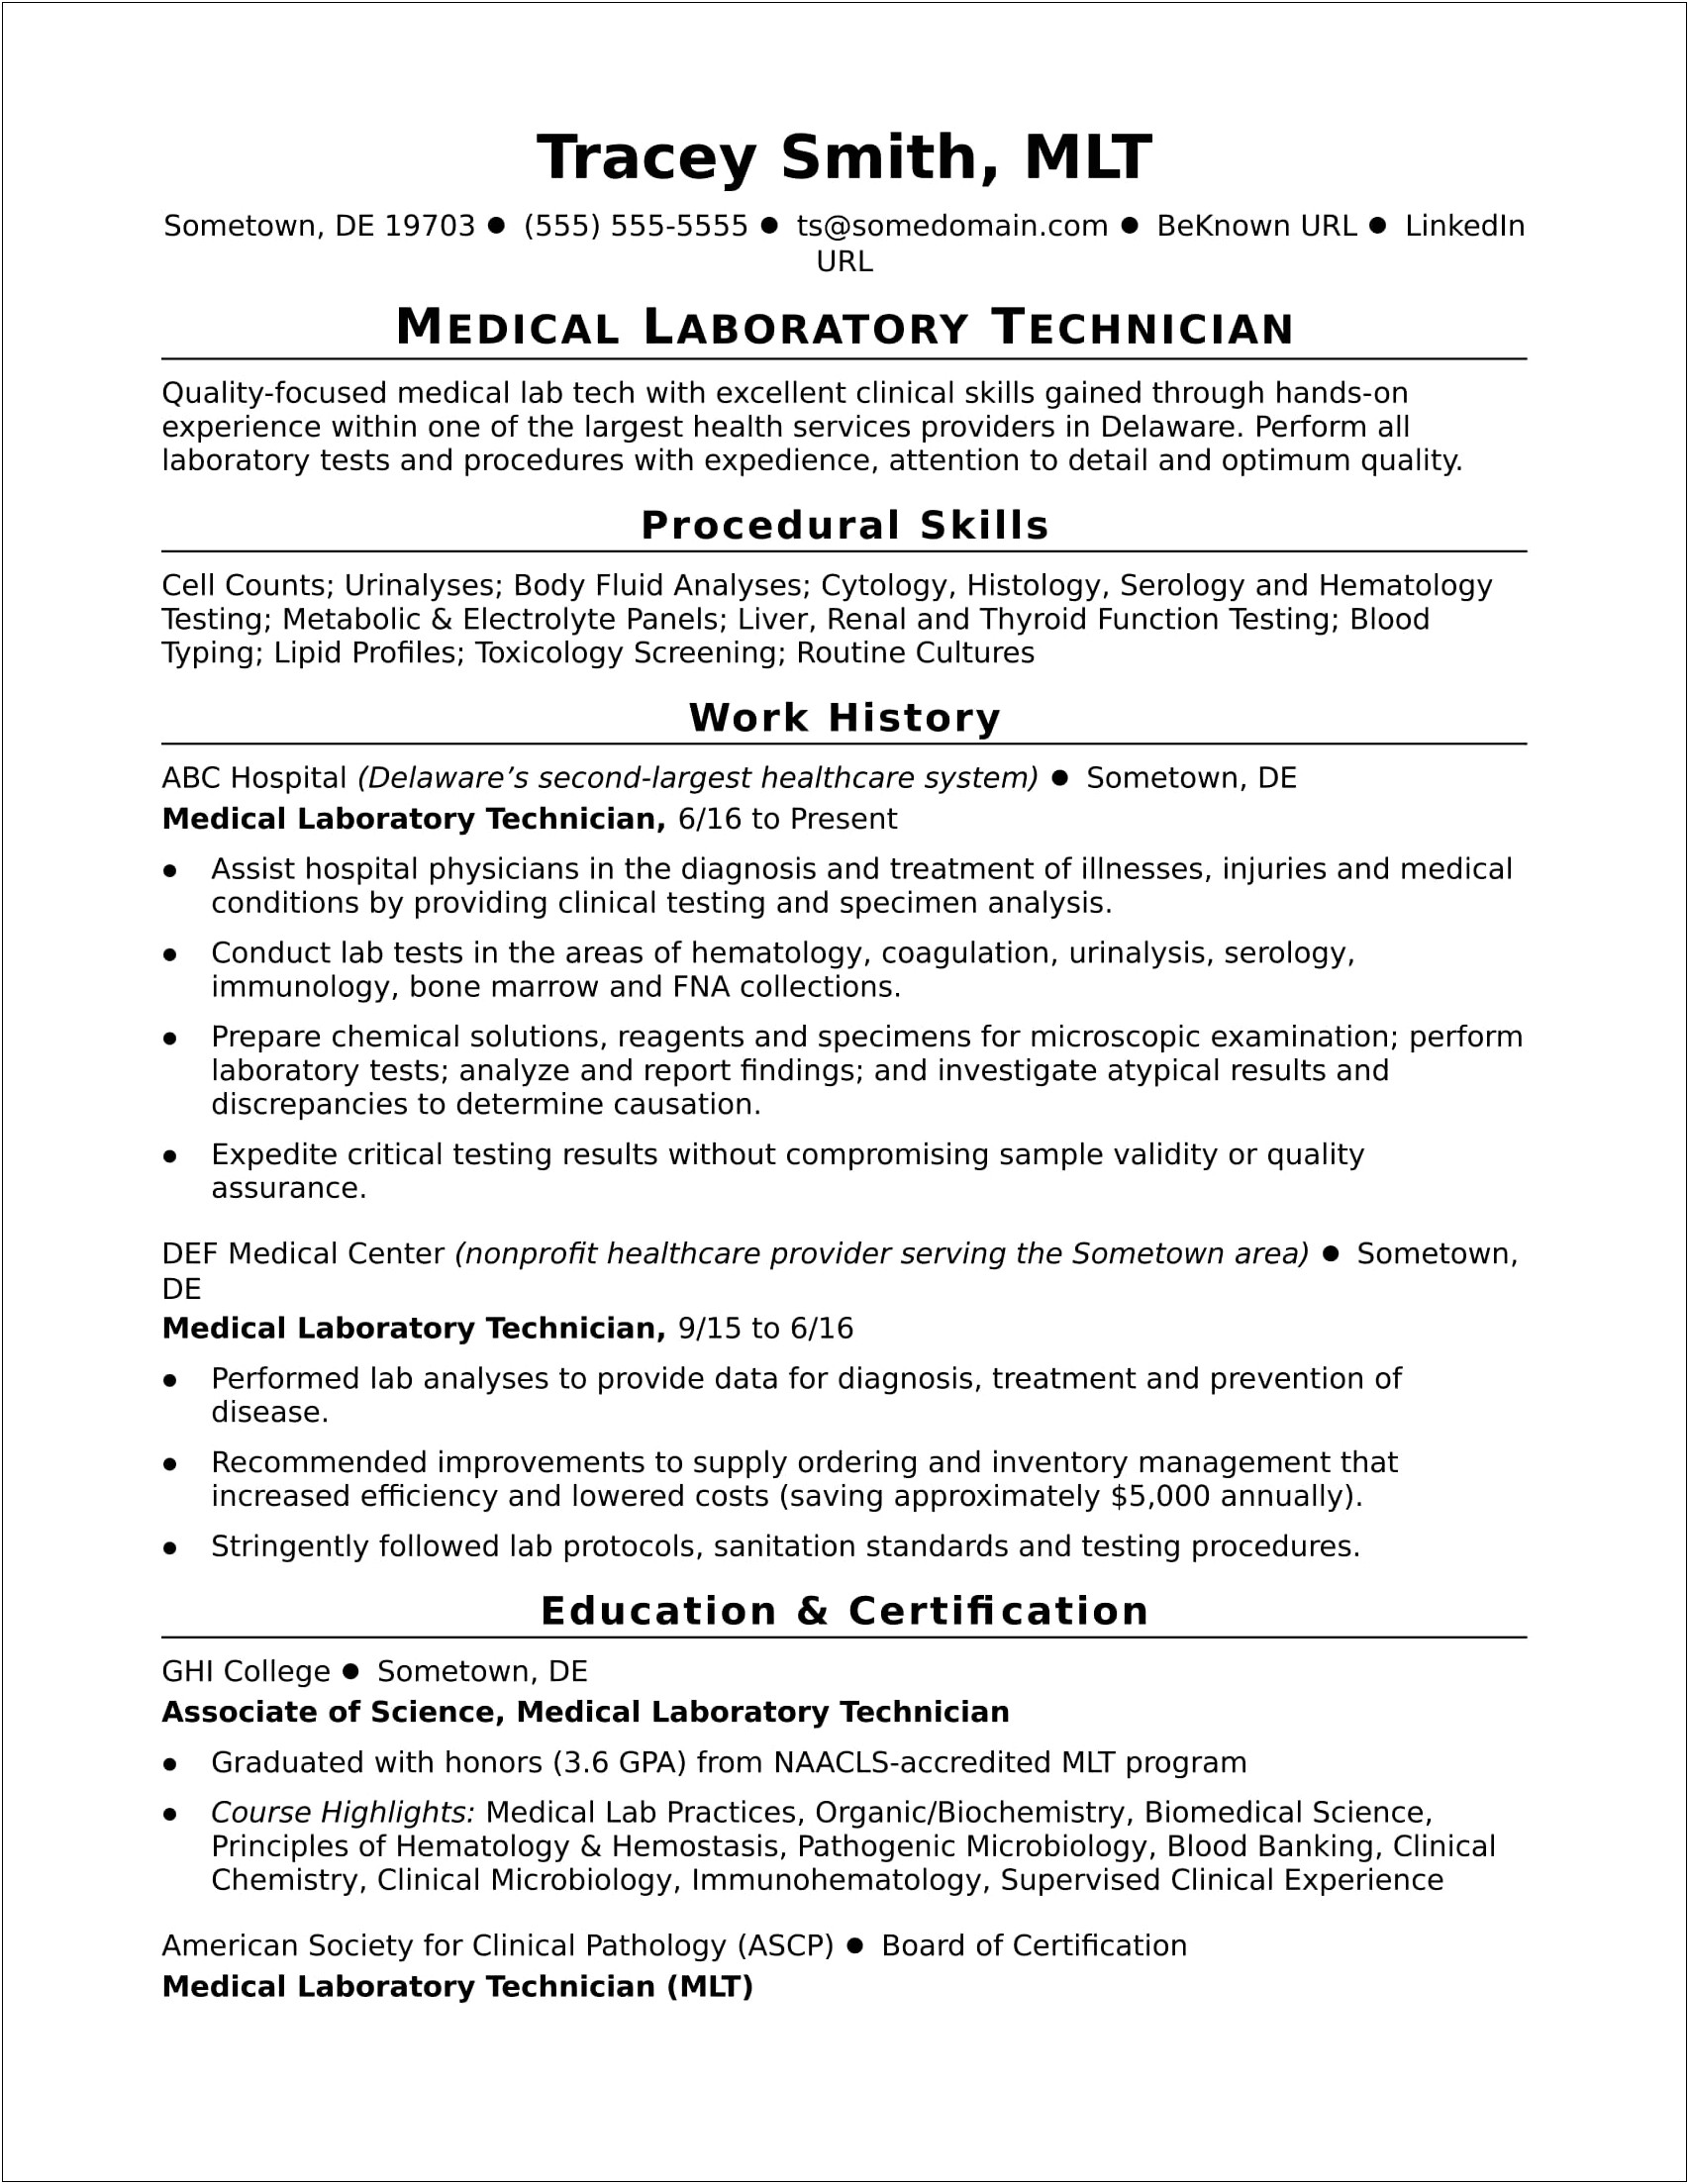 Sample Resume For Data Center Technician